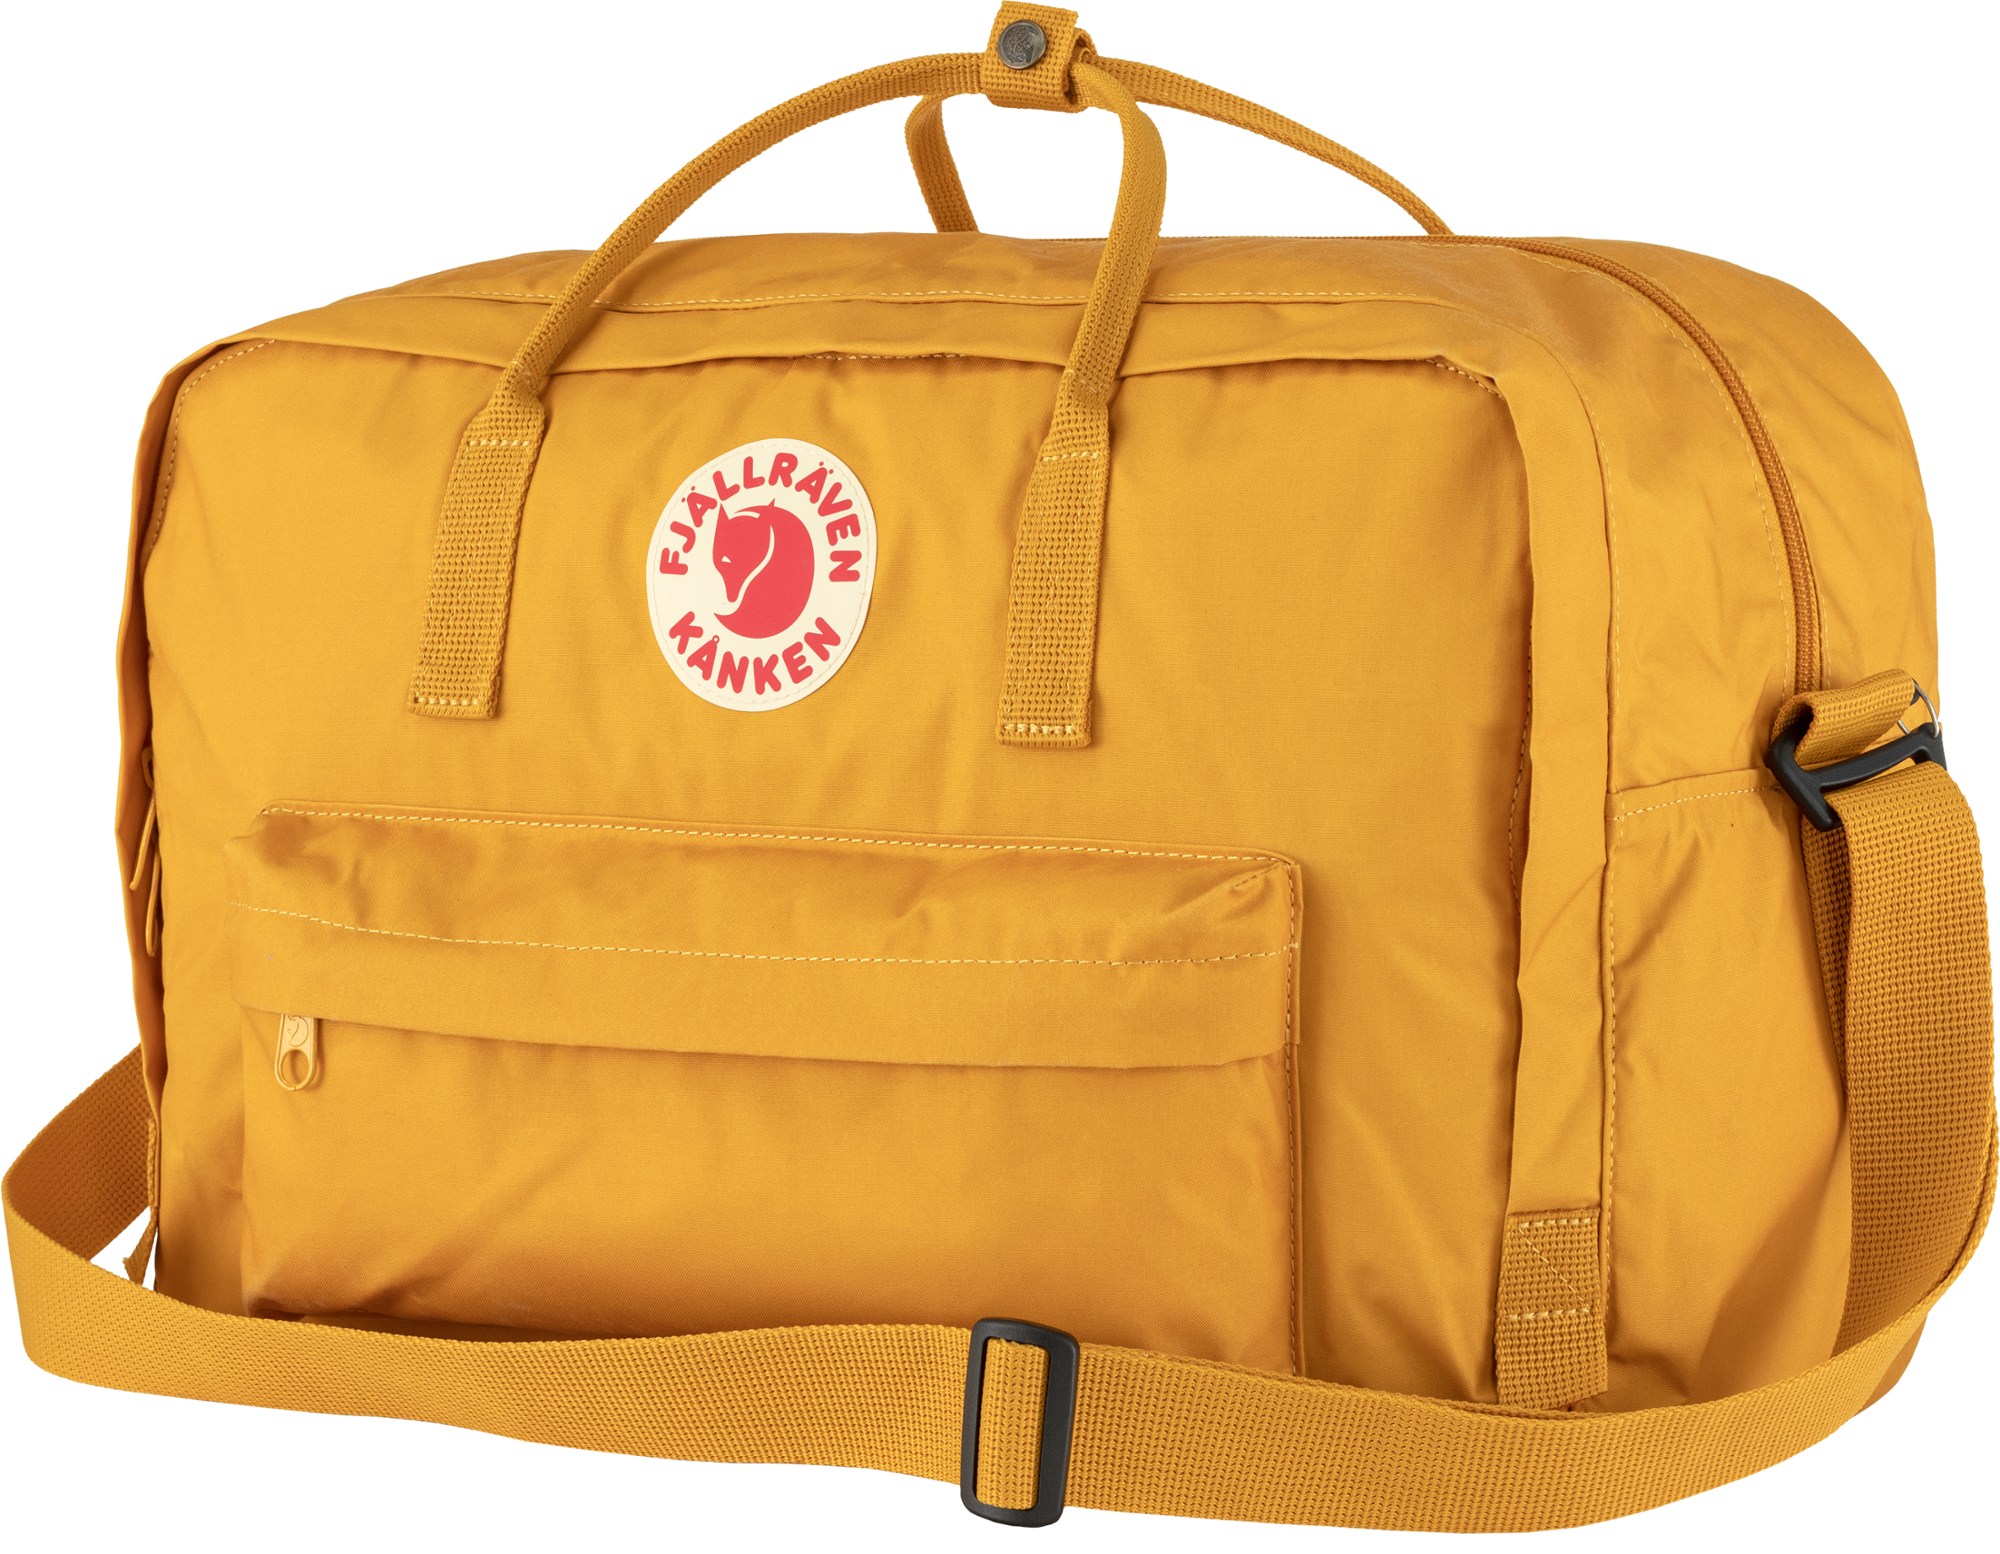 Спортивная сумка Kanken Weekender Fjallraven, желтый